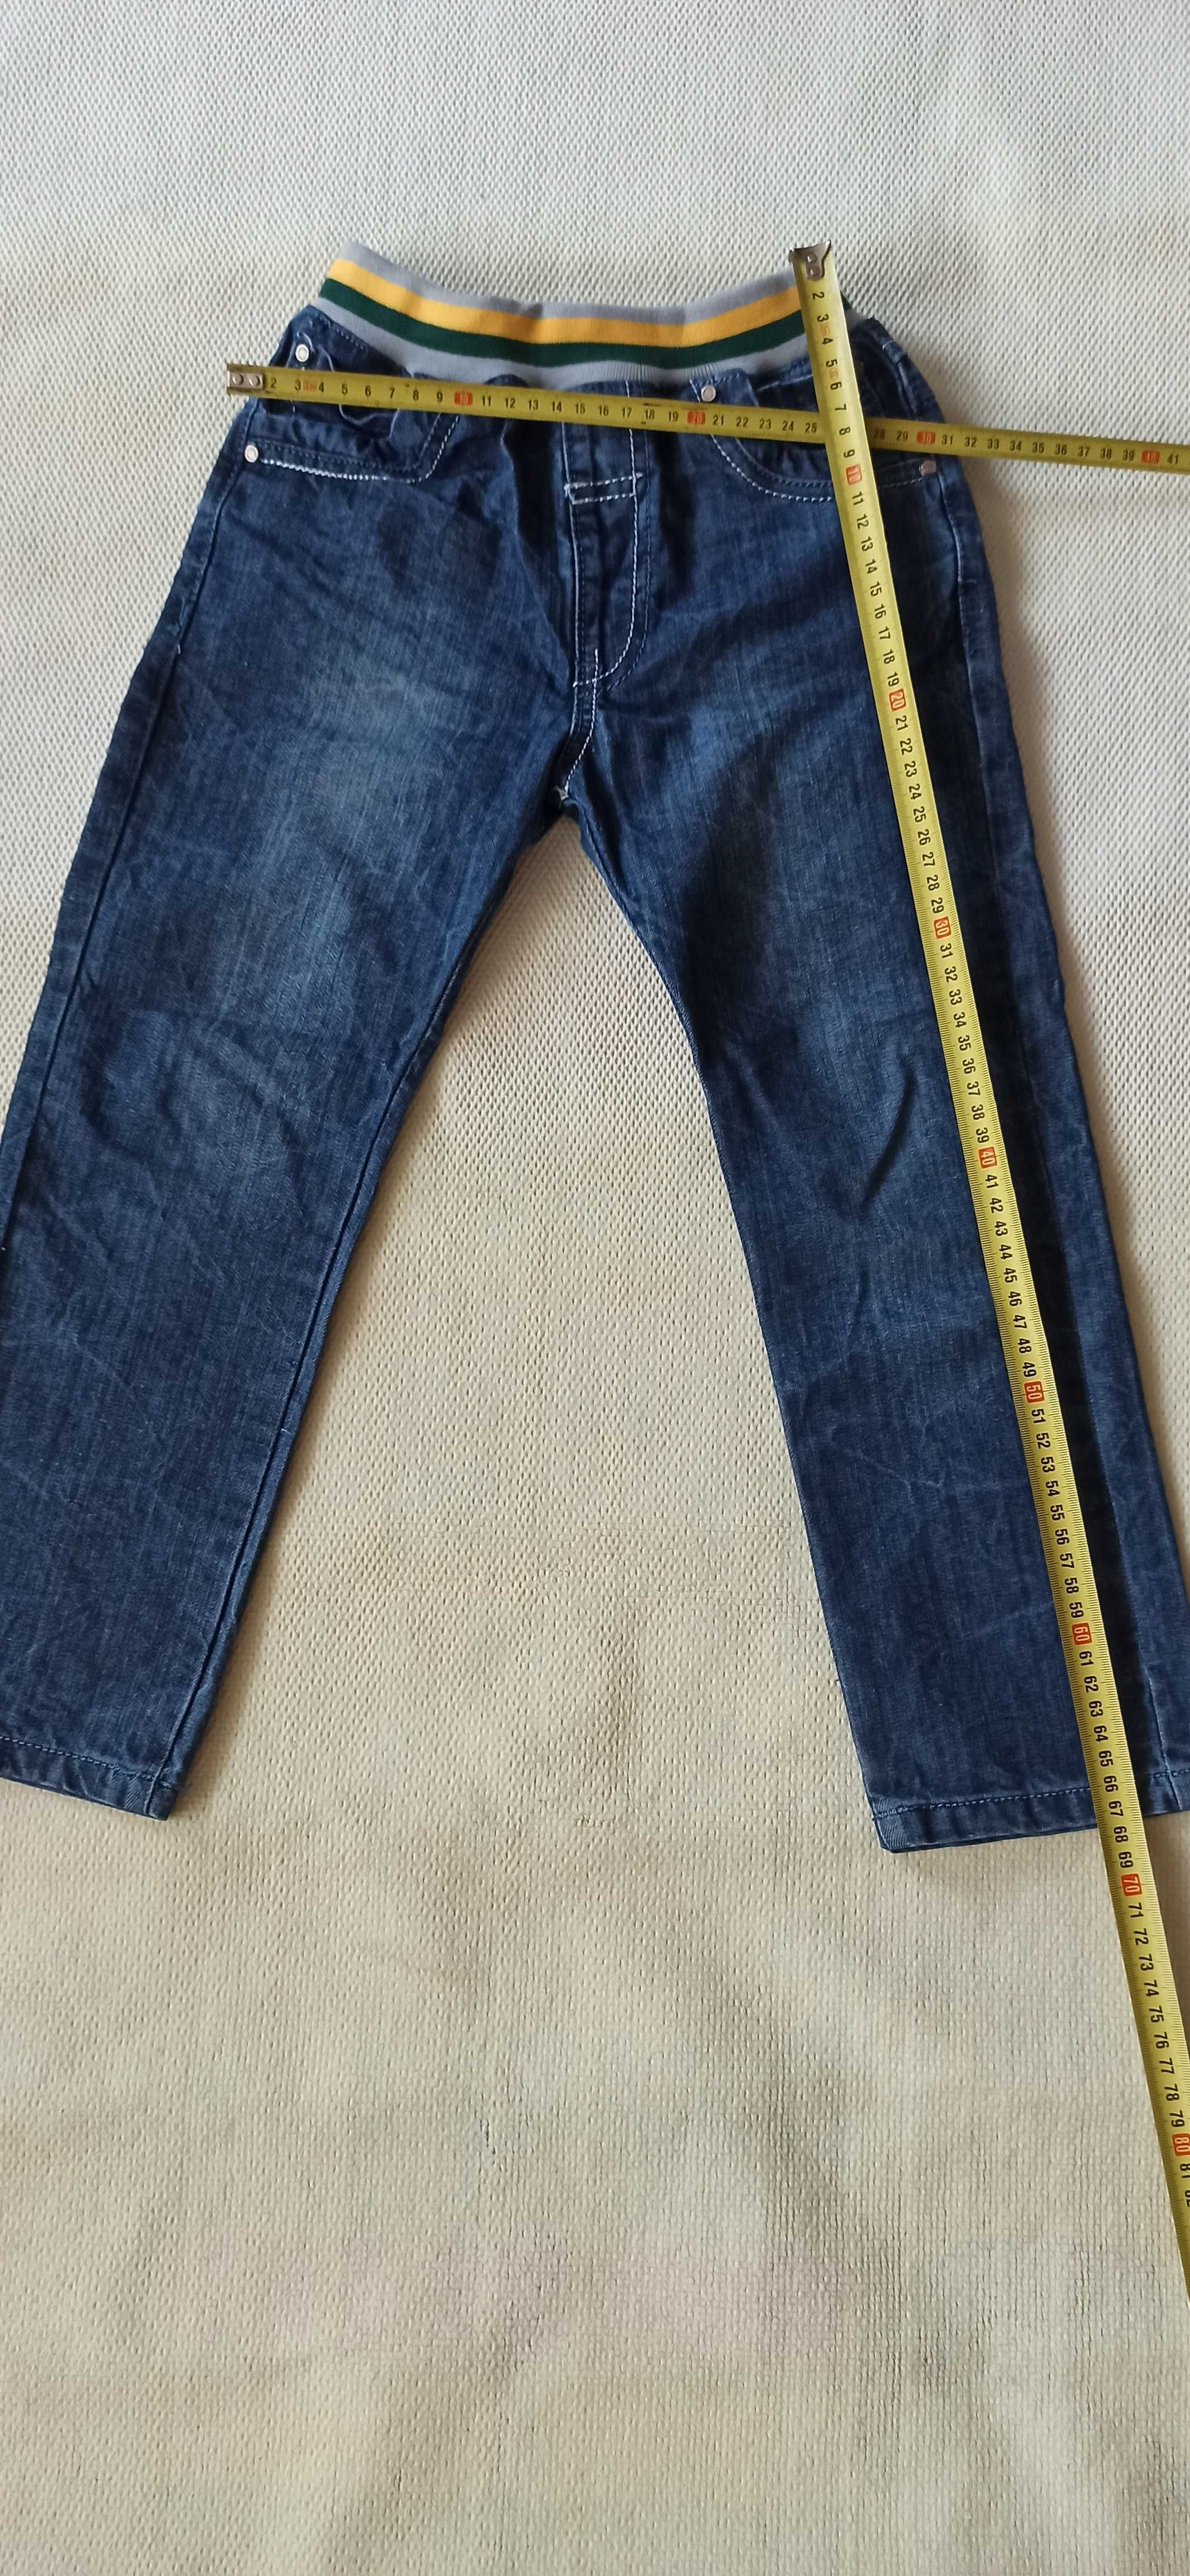 spodnie jeans chłopięce rozmiar około 134